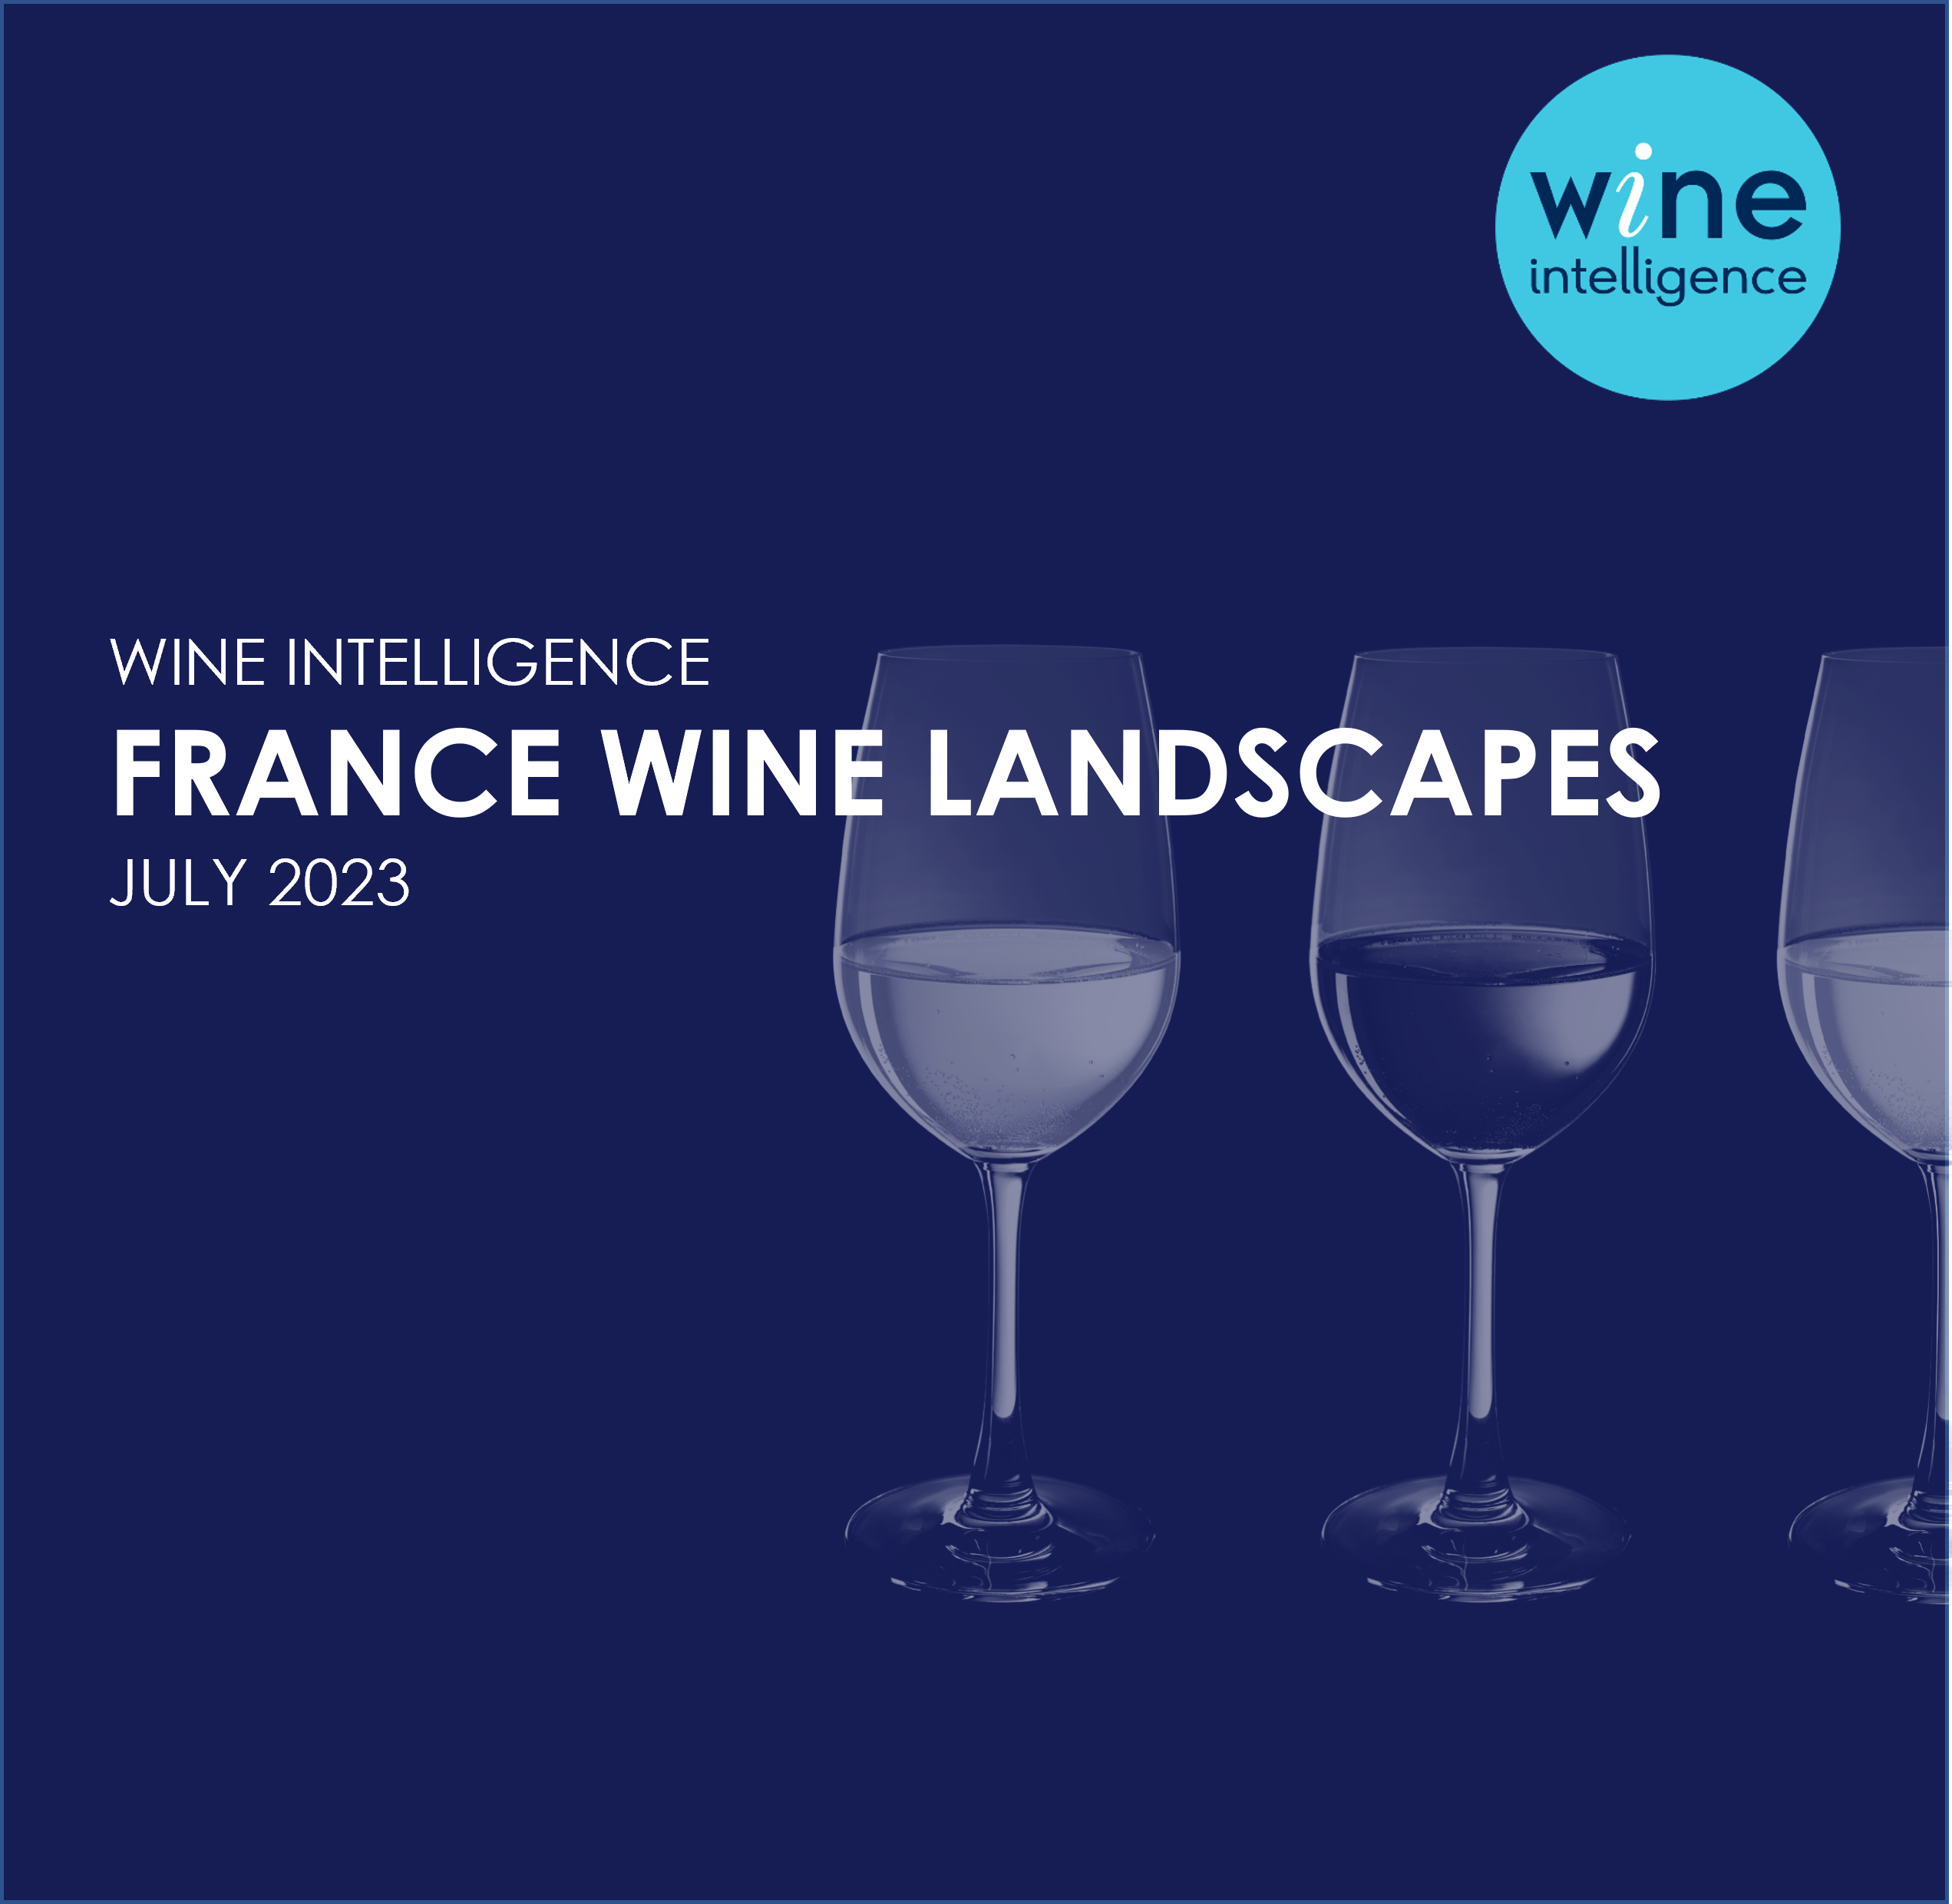 France Wine Landscapes 2023 - US Wine Landscapes Report 2023